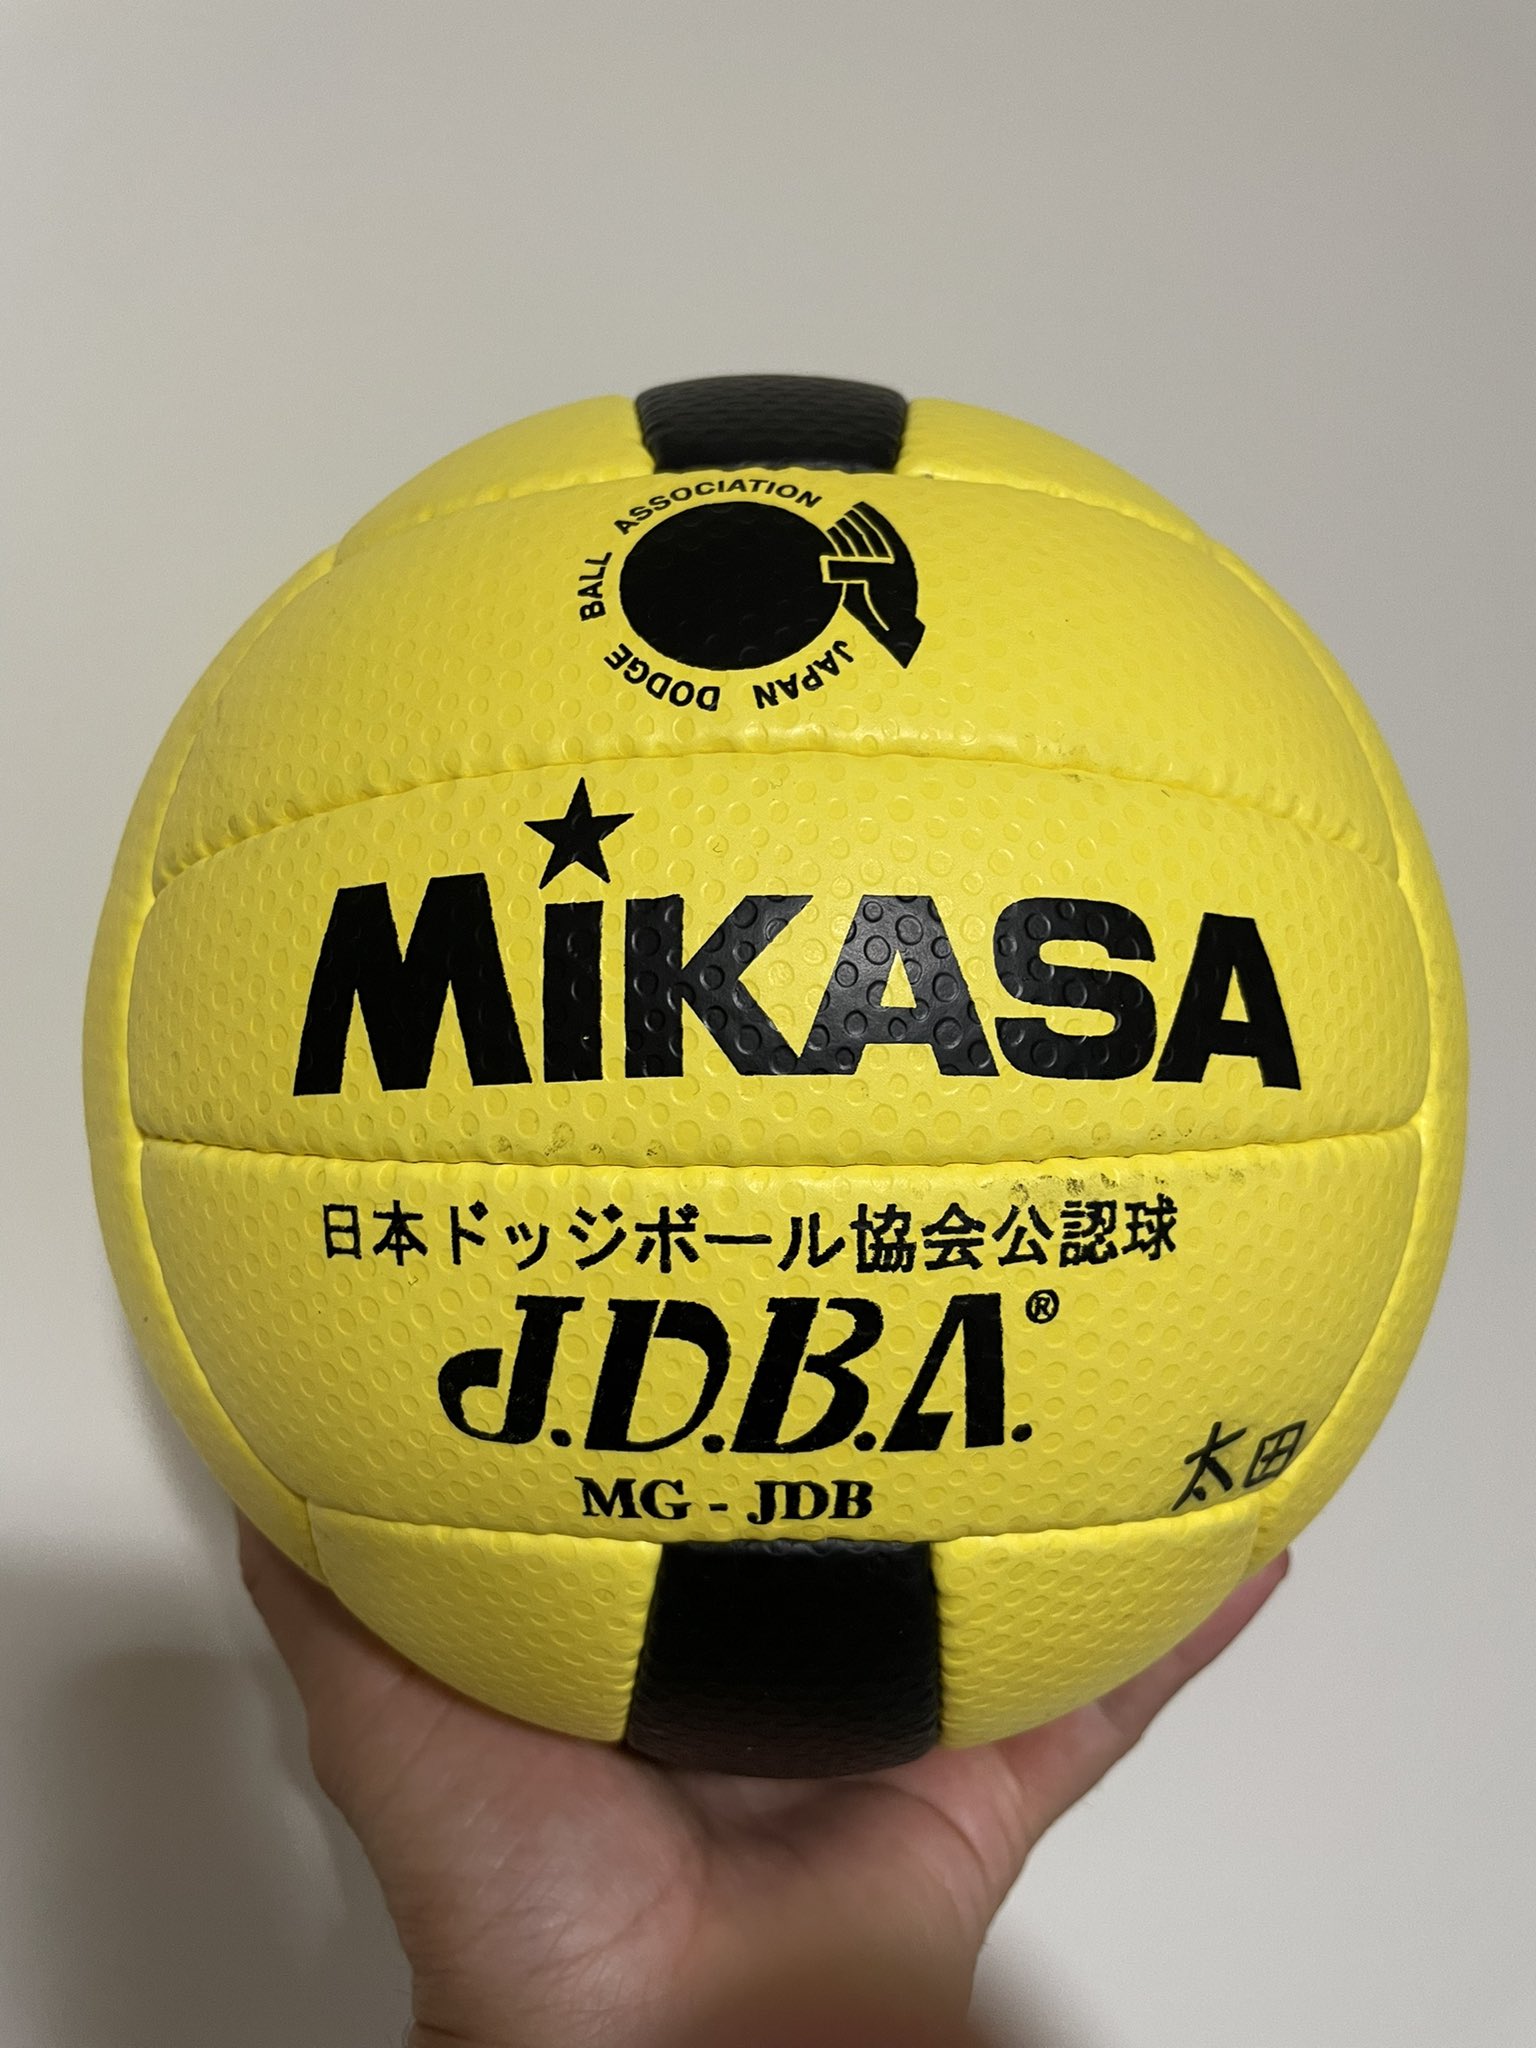 いぬ太田 本格的にドッジボールを始めるために公式球を買いました 僕ら世代はやっぱりmikasaですね ドッジボール 競技ドッジボール Jdba 日本ドッジボール協会 T Co Ymzw5aawbt Twitter